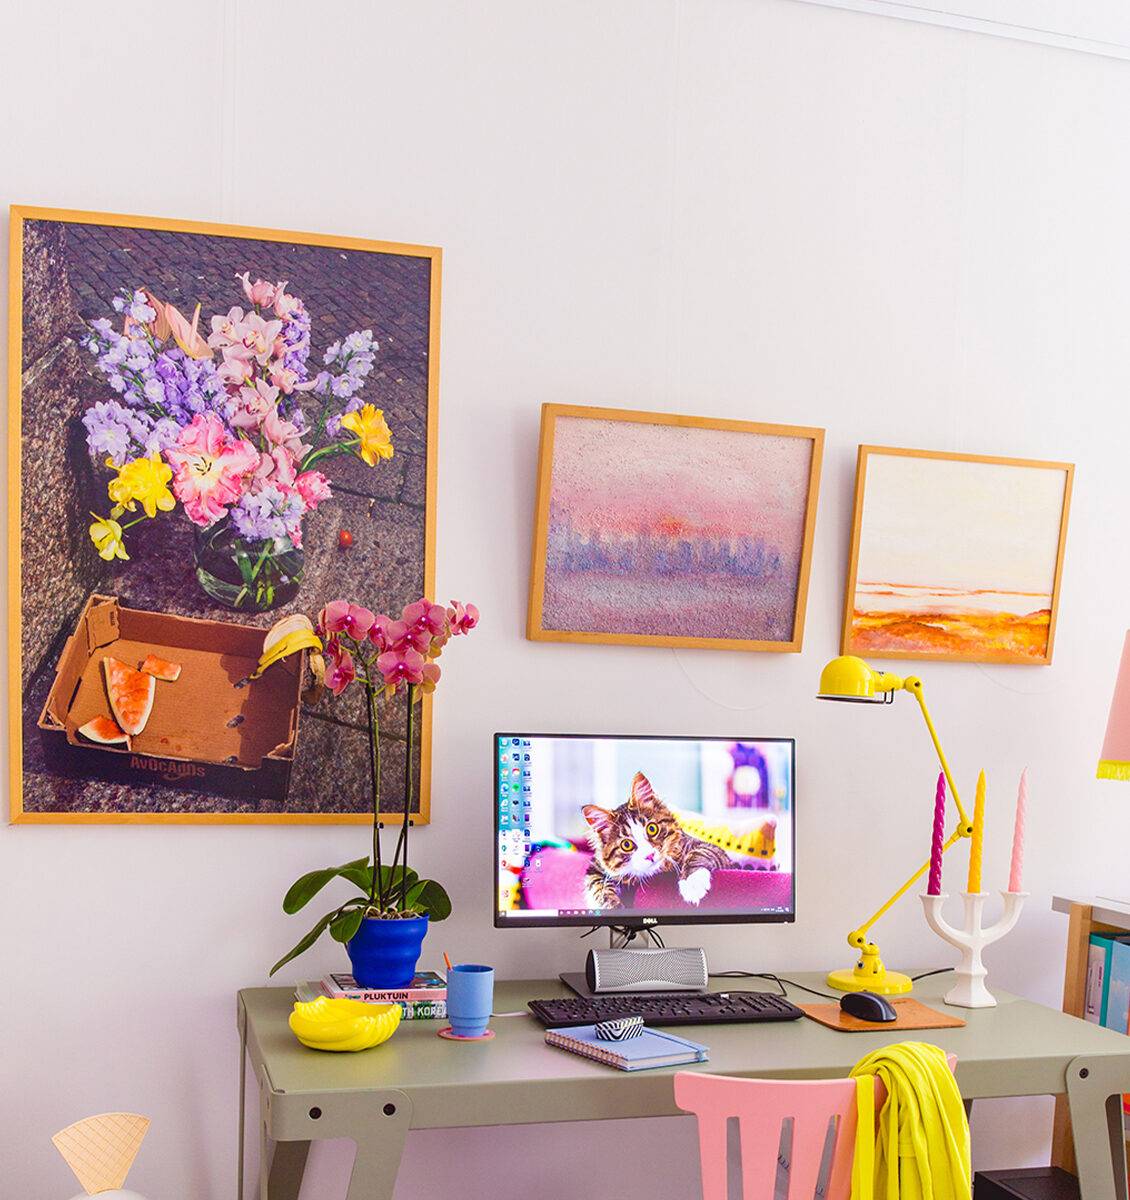 NL kleurrijke kantoorruimte met kleurrijke wanddecoratie